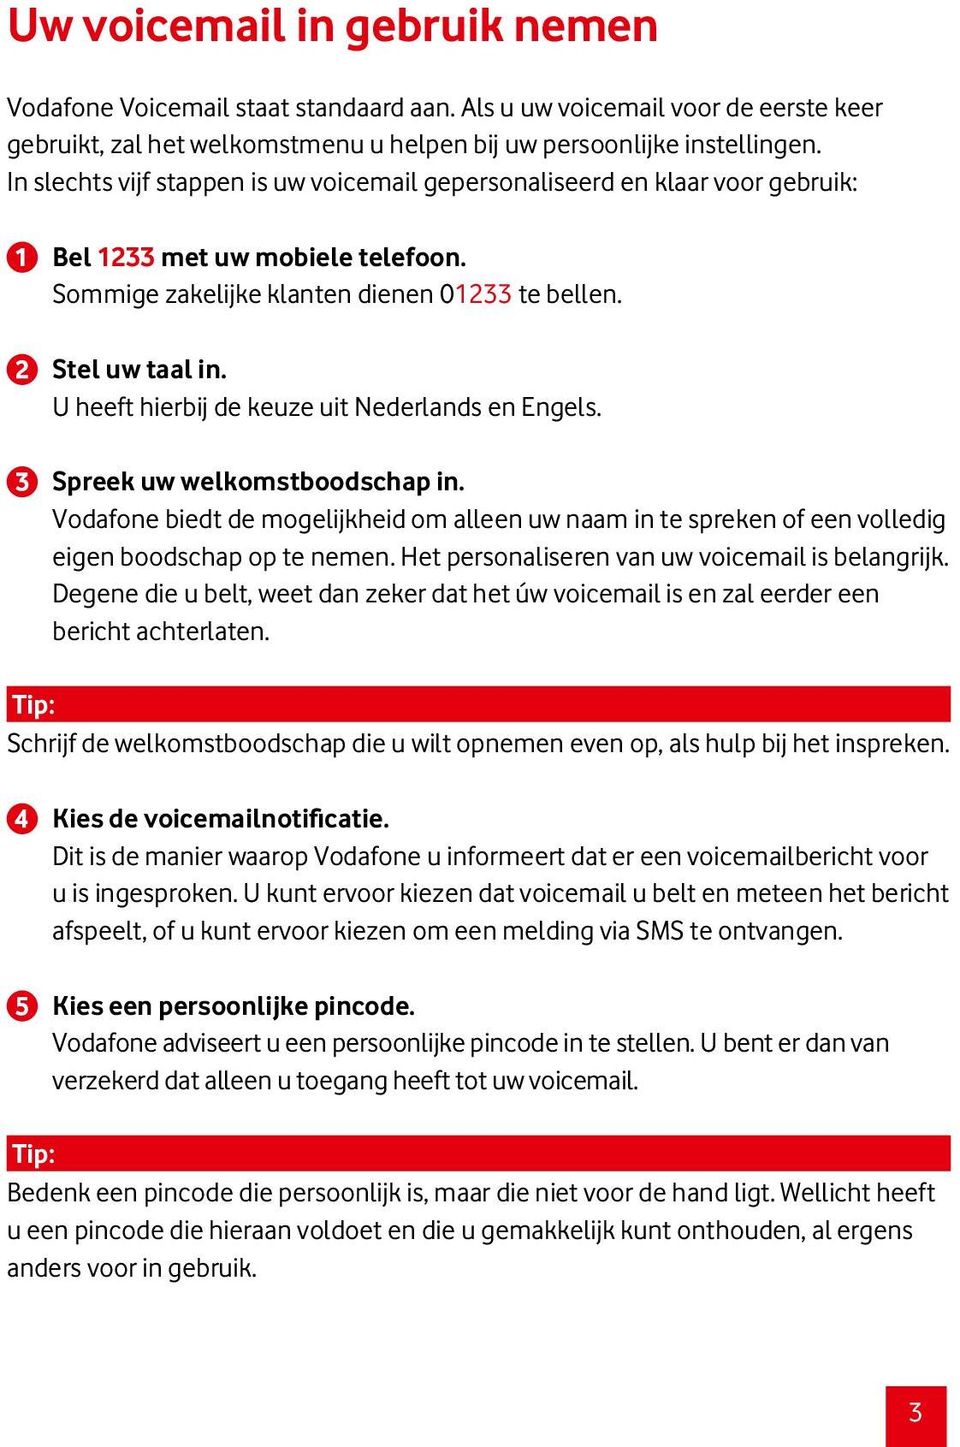 U heeft hierbij de keuze uit Nederlands en Engels. Spreek uw welkomstboodschap in. Vodafone biedt de mogelijkheid om alleen uw naam in te spreken of een volledig eigen boodschap op te nemen.